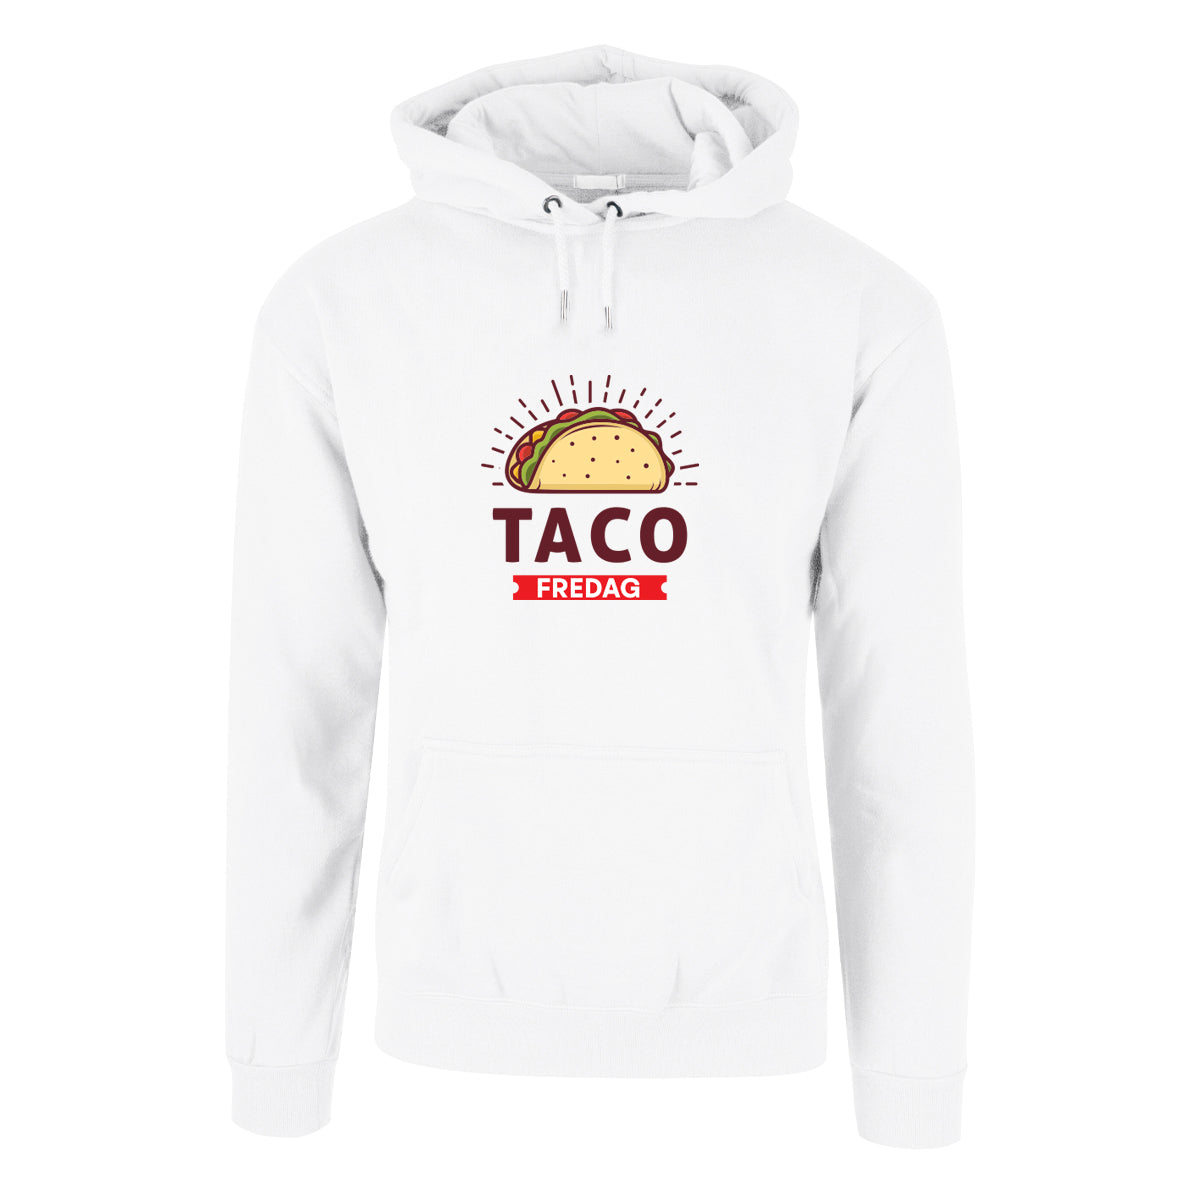 Taco-Fredag - hettegenser